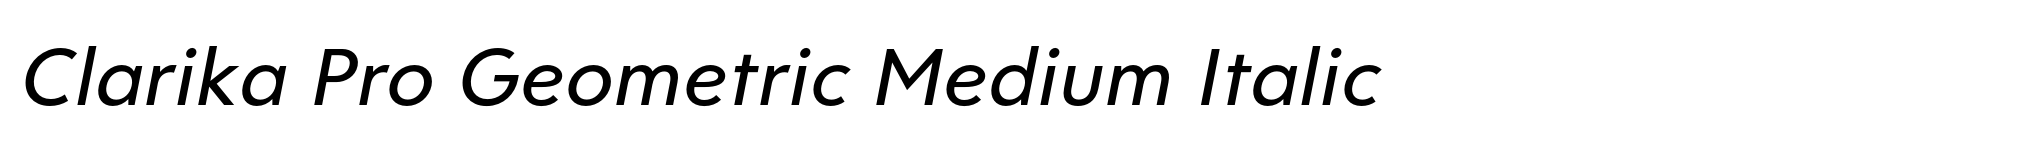 Clarika Pro Geometric Medium Italic image